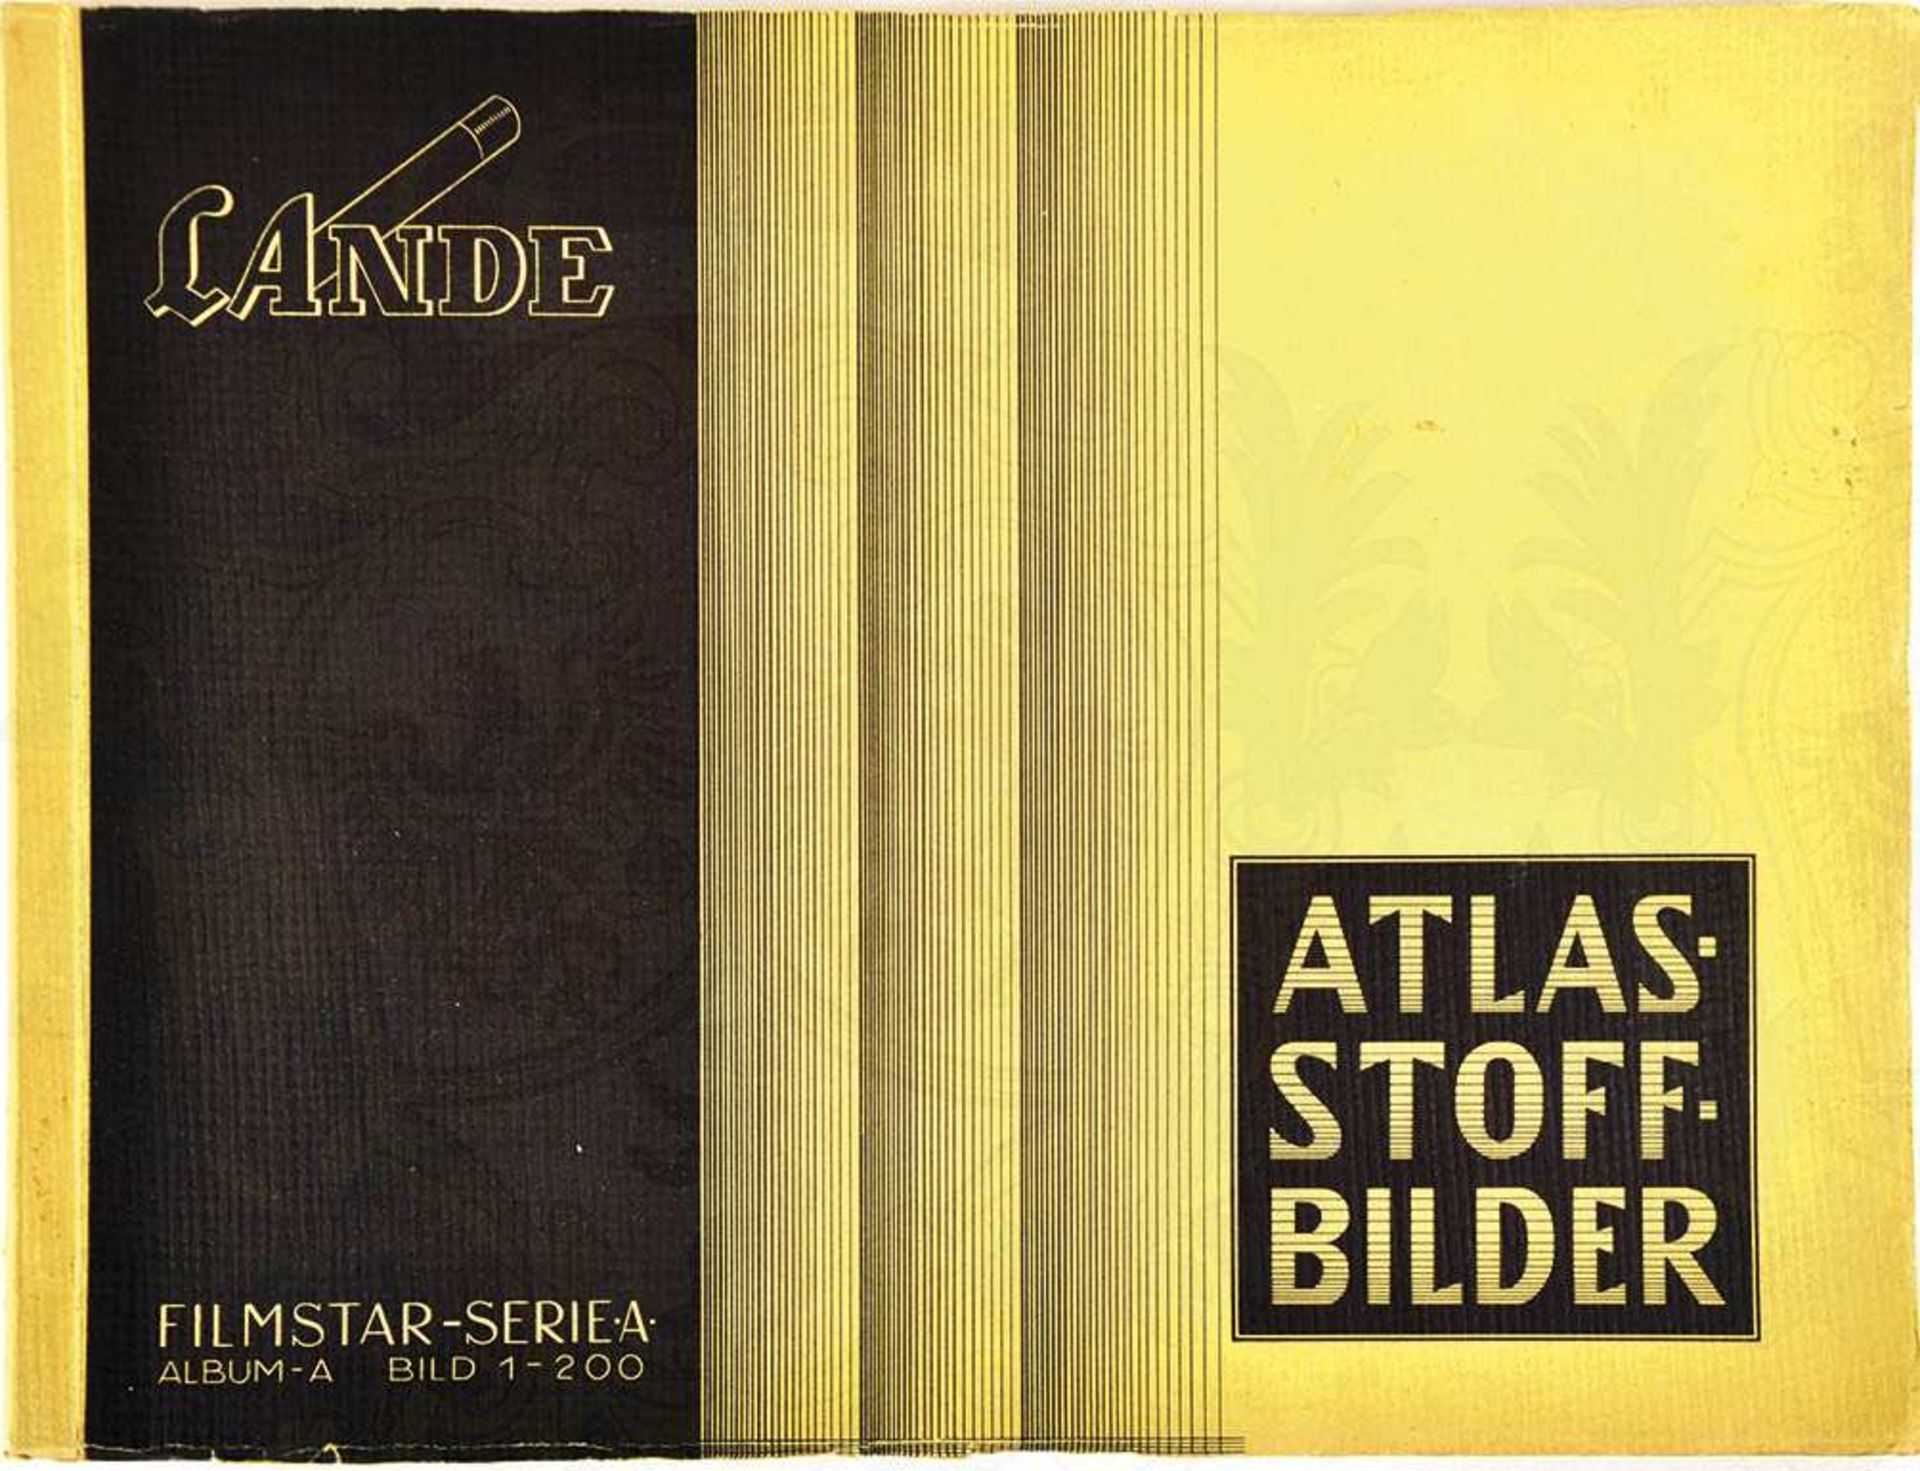 ATLAS STOFF-BILDER "FILMSTARS", Serie A, Album A, Lande, Dresden 1932, 200 Bilder aus Atlasstoff,